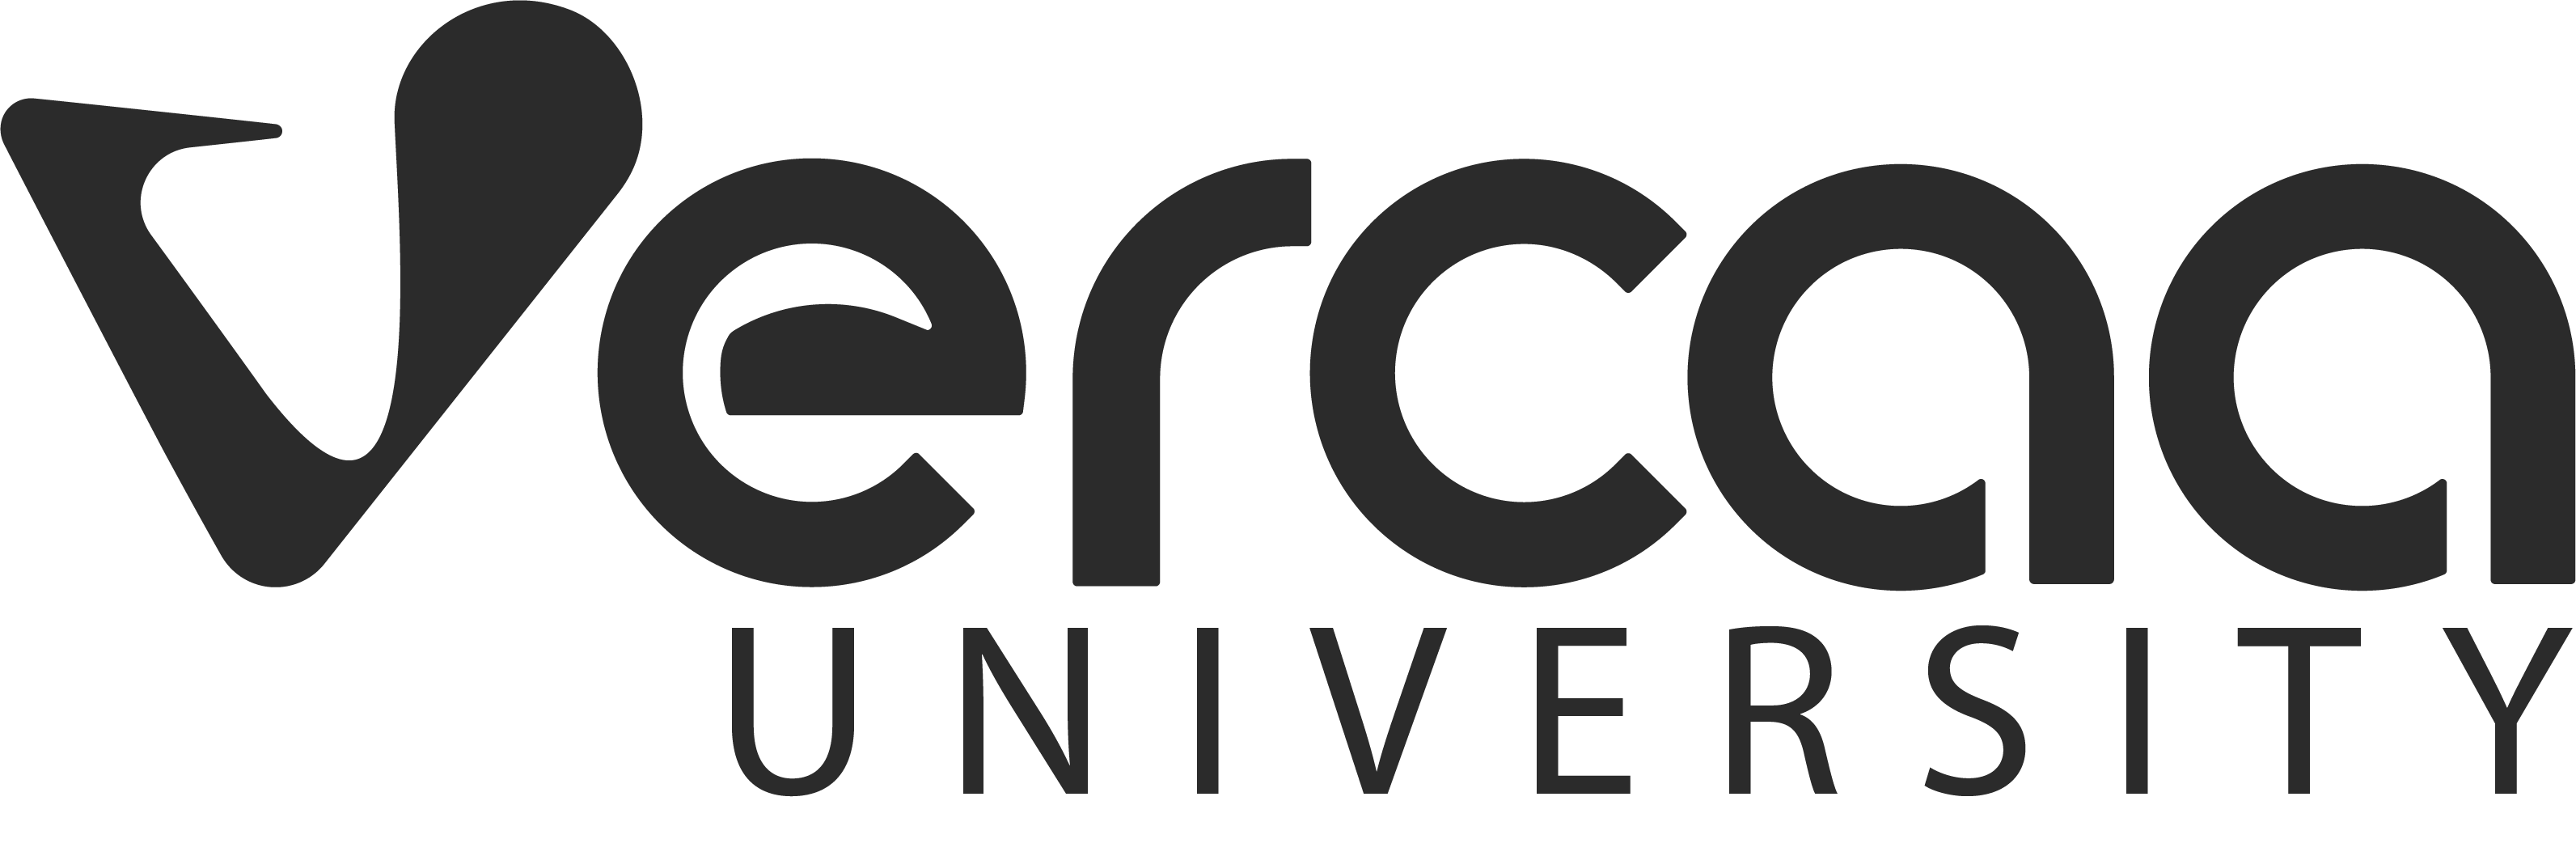 Vercaa University